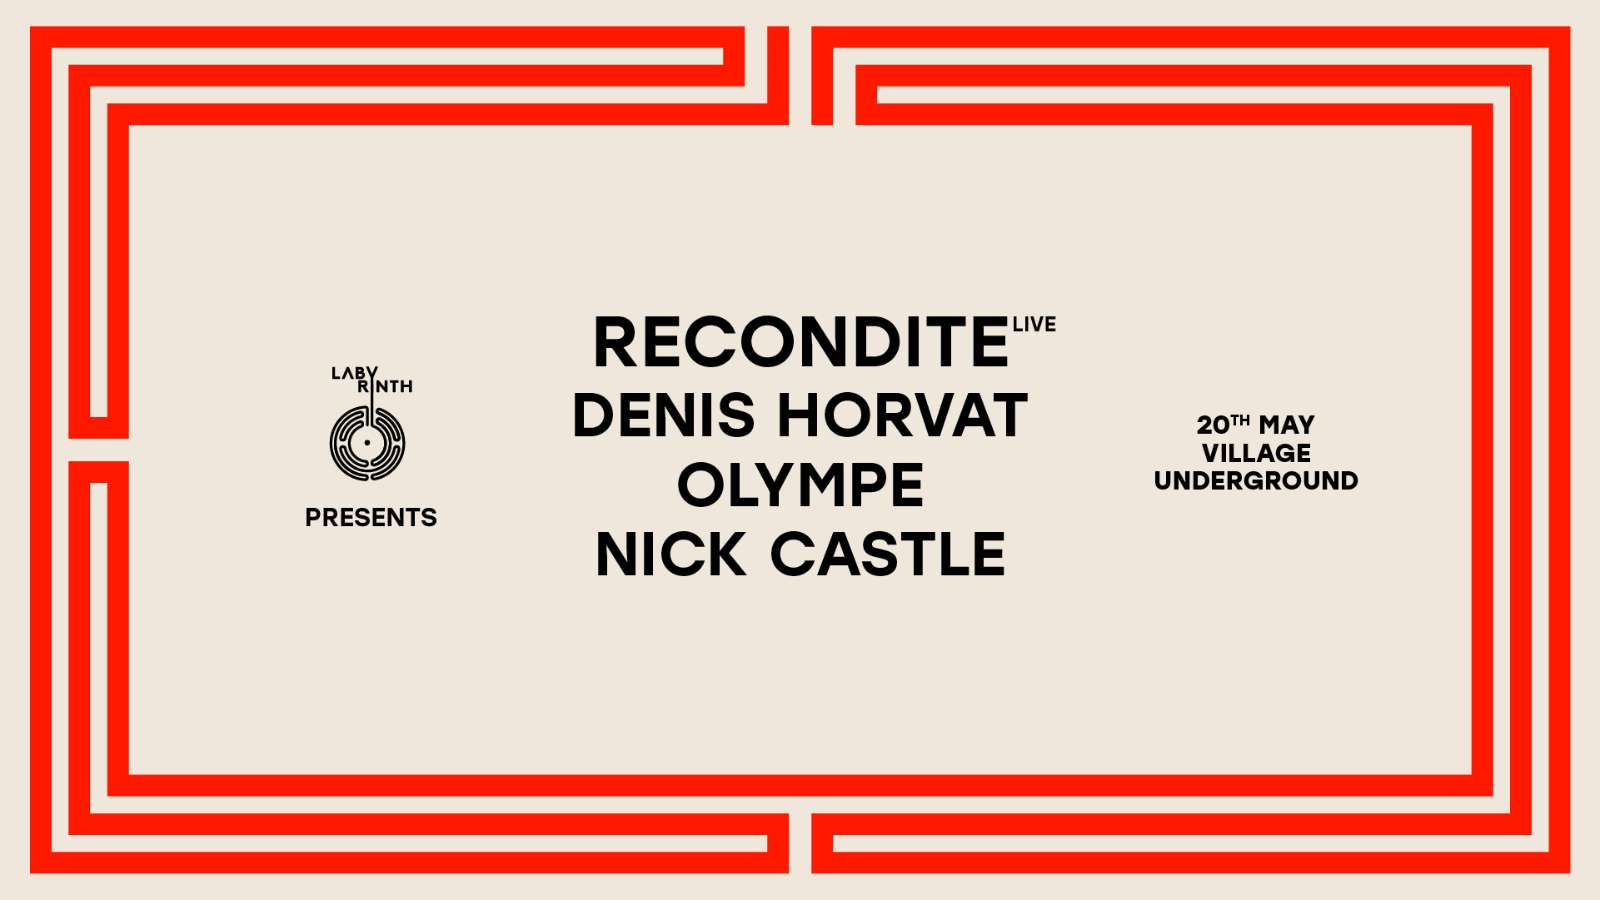 Recondite live, Denis Horvat & Olympe at Village Underground 